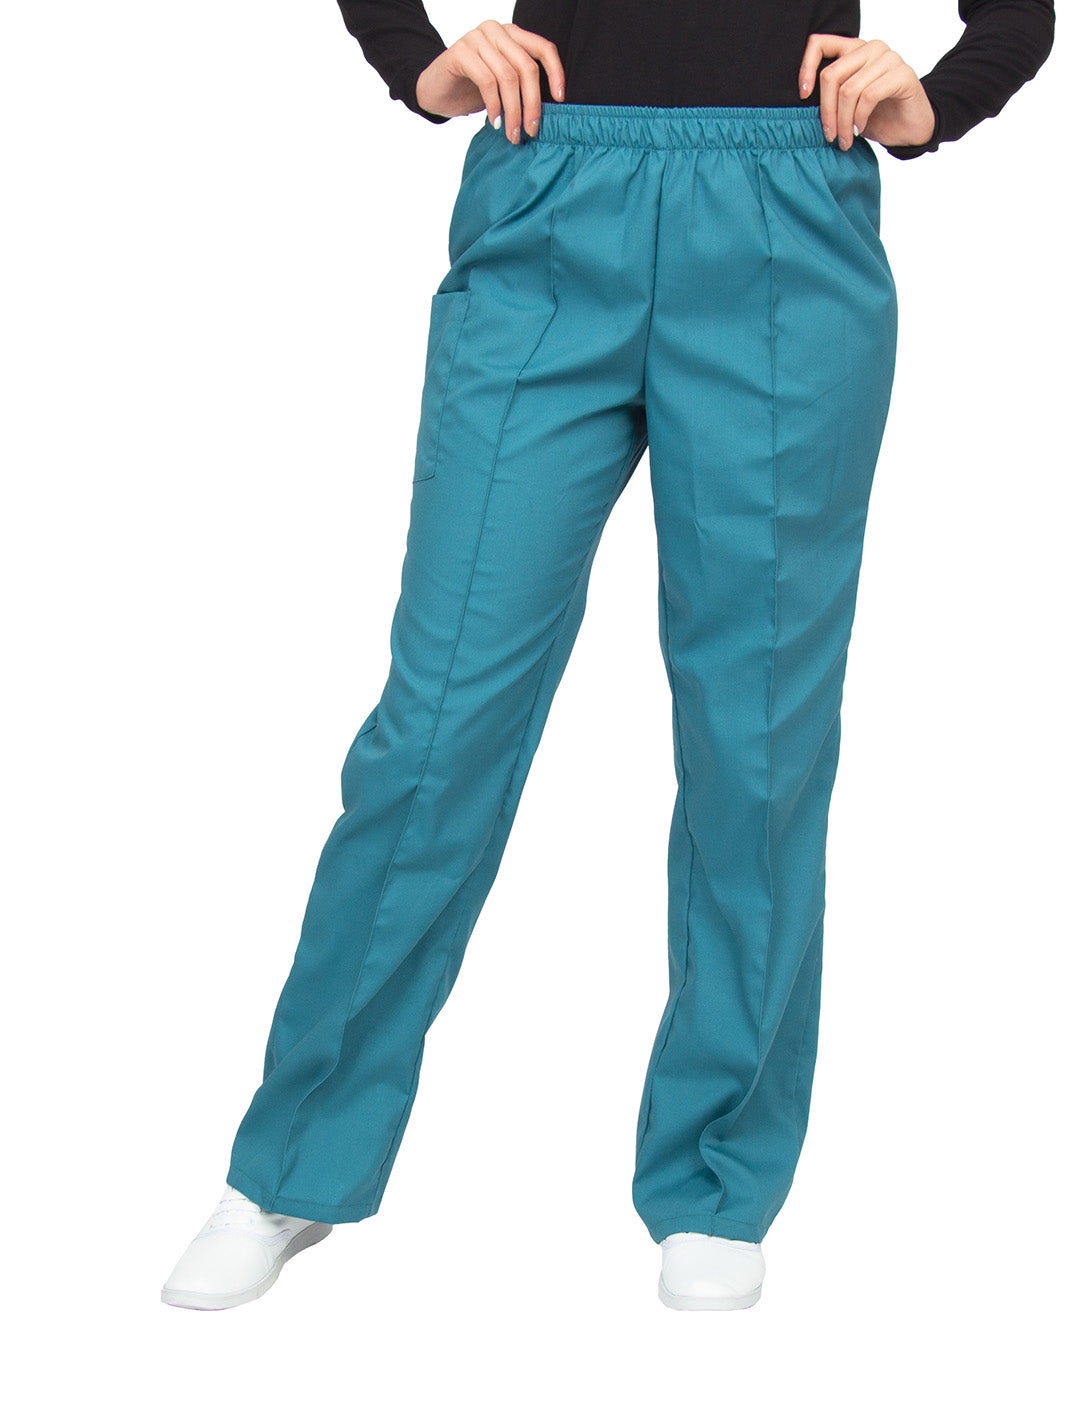 Pantalón clínico turquesa de corte recto, con una aforza al frente, una bolsa en el lado derecho con cierre de velcro, y cintura de elástico.